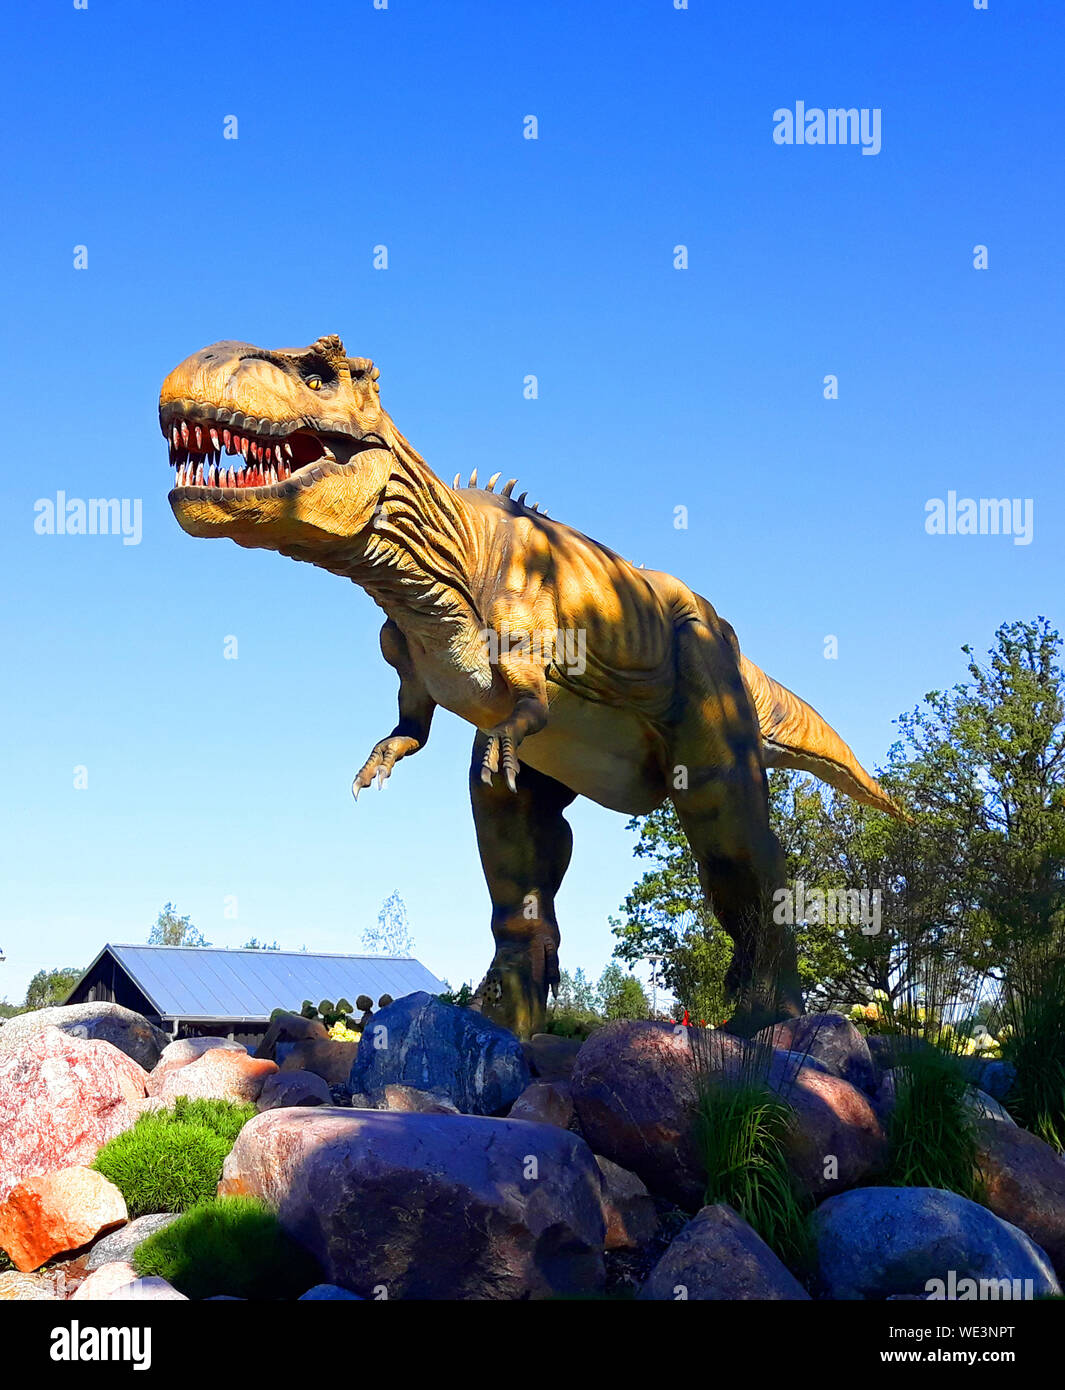 Tyrannosaurus rex dinosaur reptile t prédateurs sauvages Jurassic park prêt à l'attaque Banque D'Images